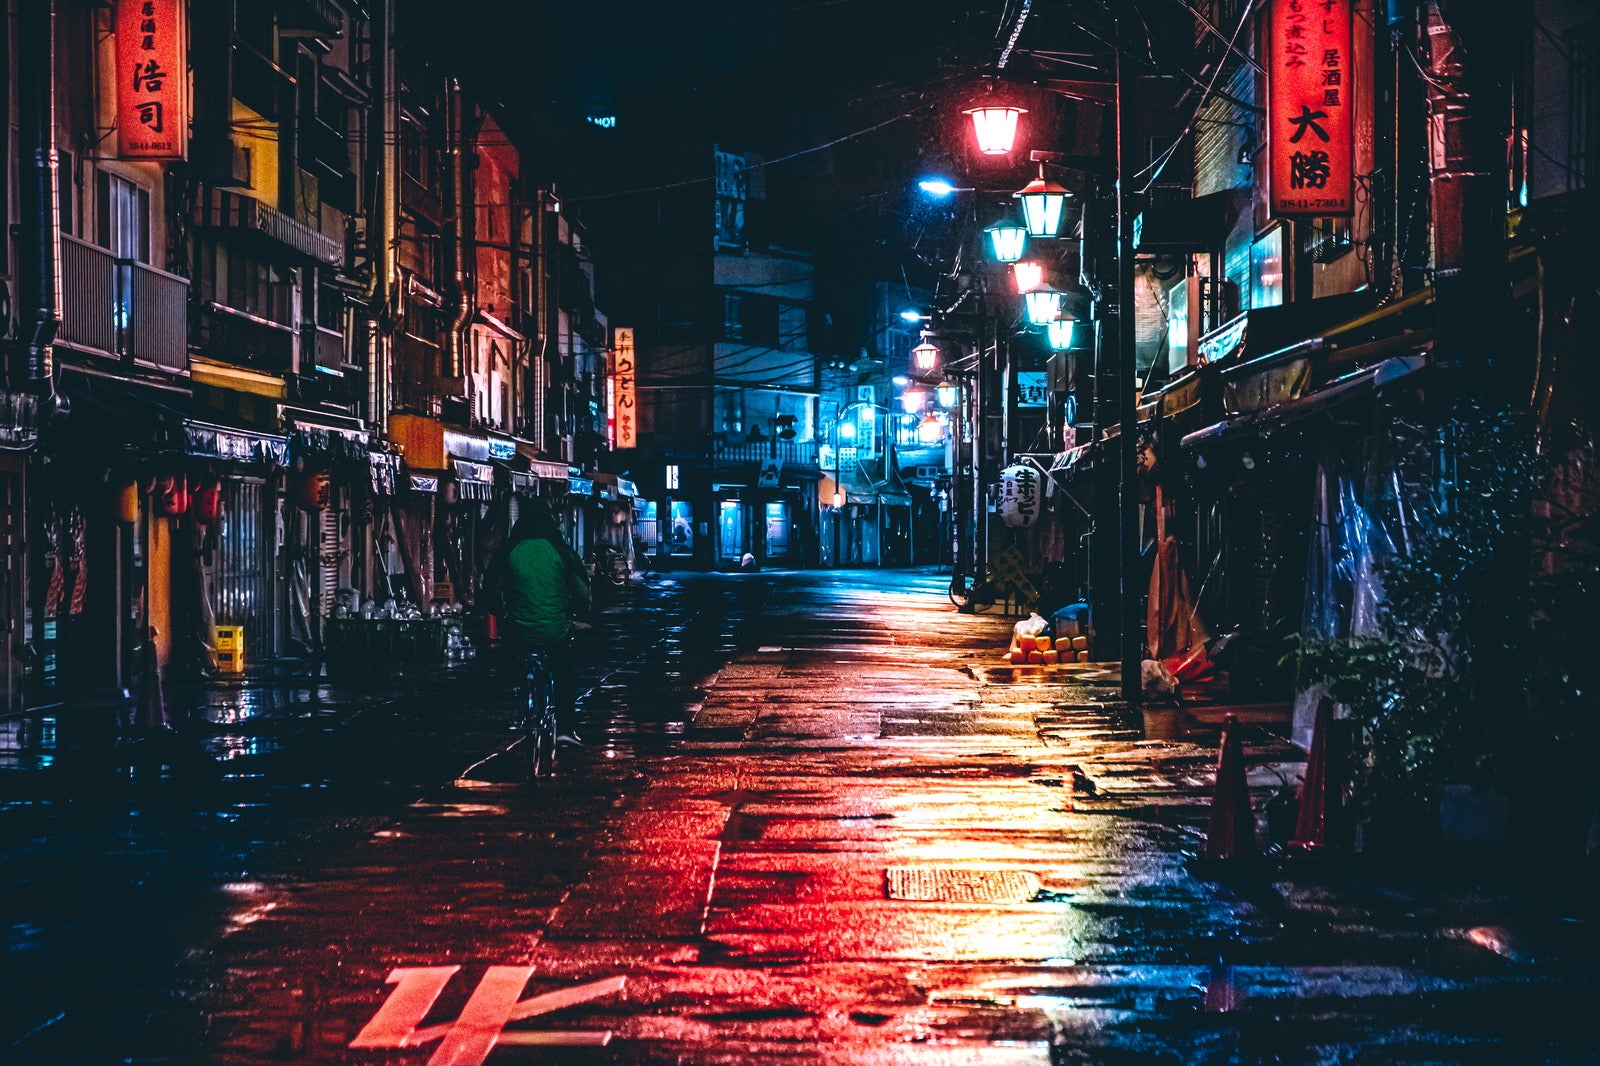 「雨上がりの路地裏の夜景」の写真